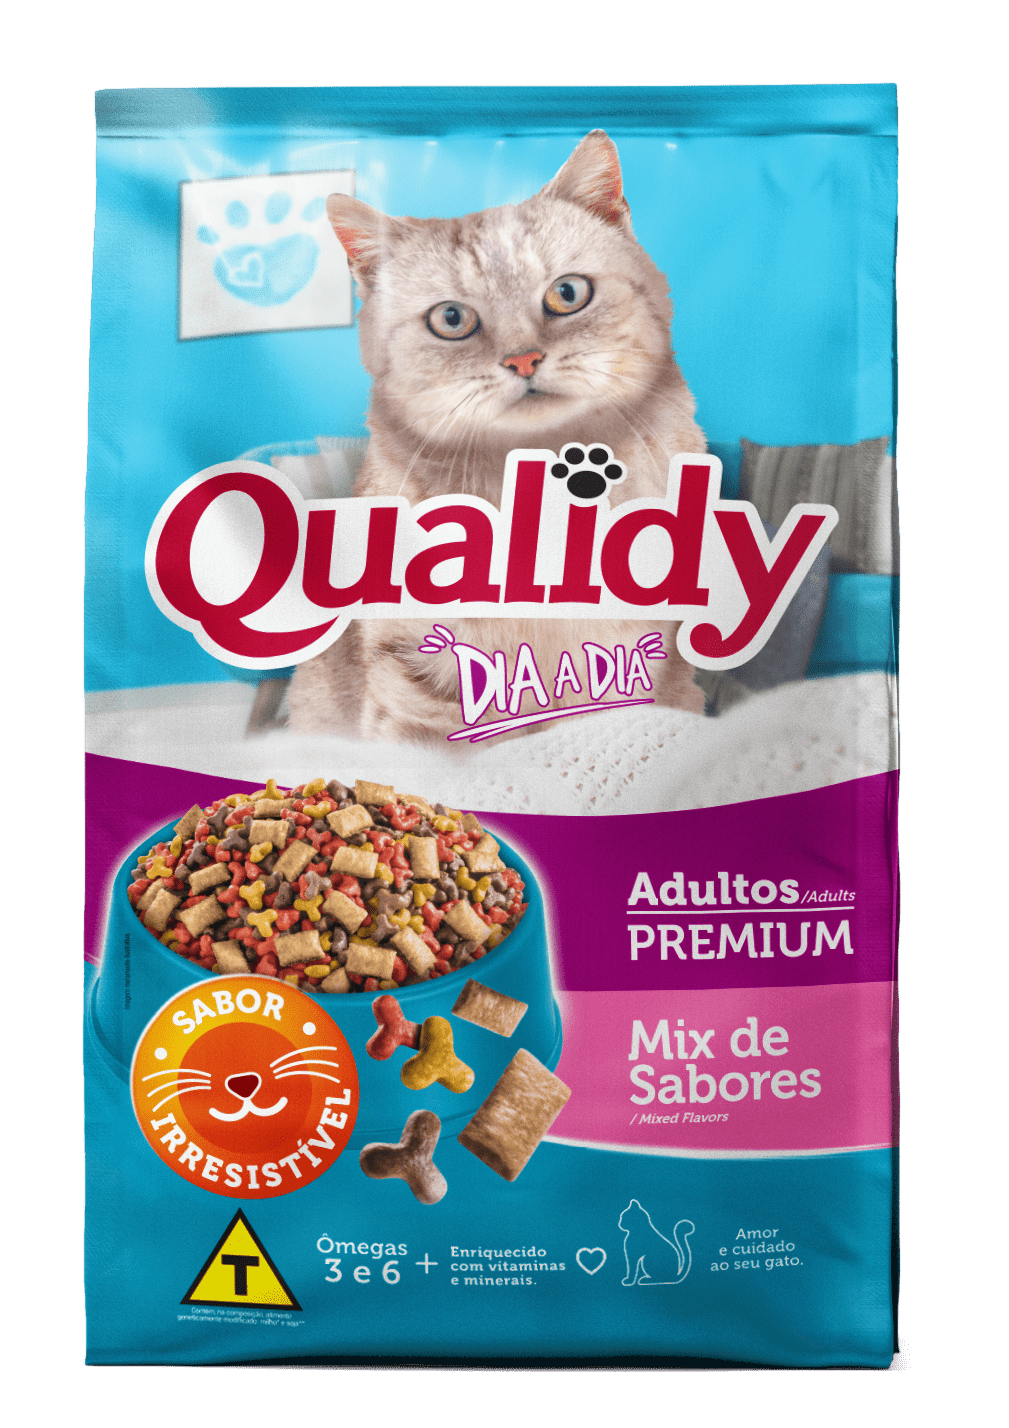 Qualidy Dia a Dia Adult Cats Mix flavors